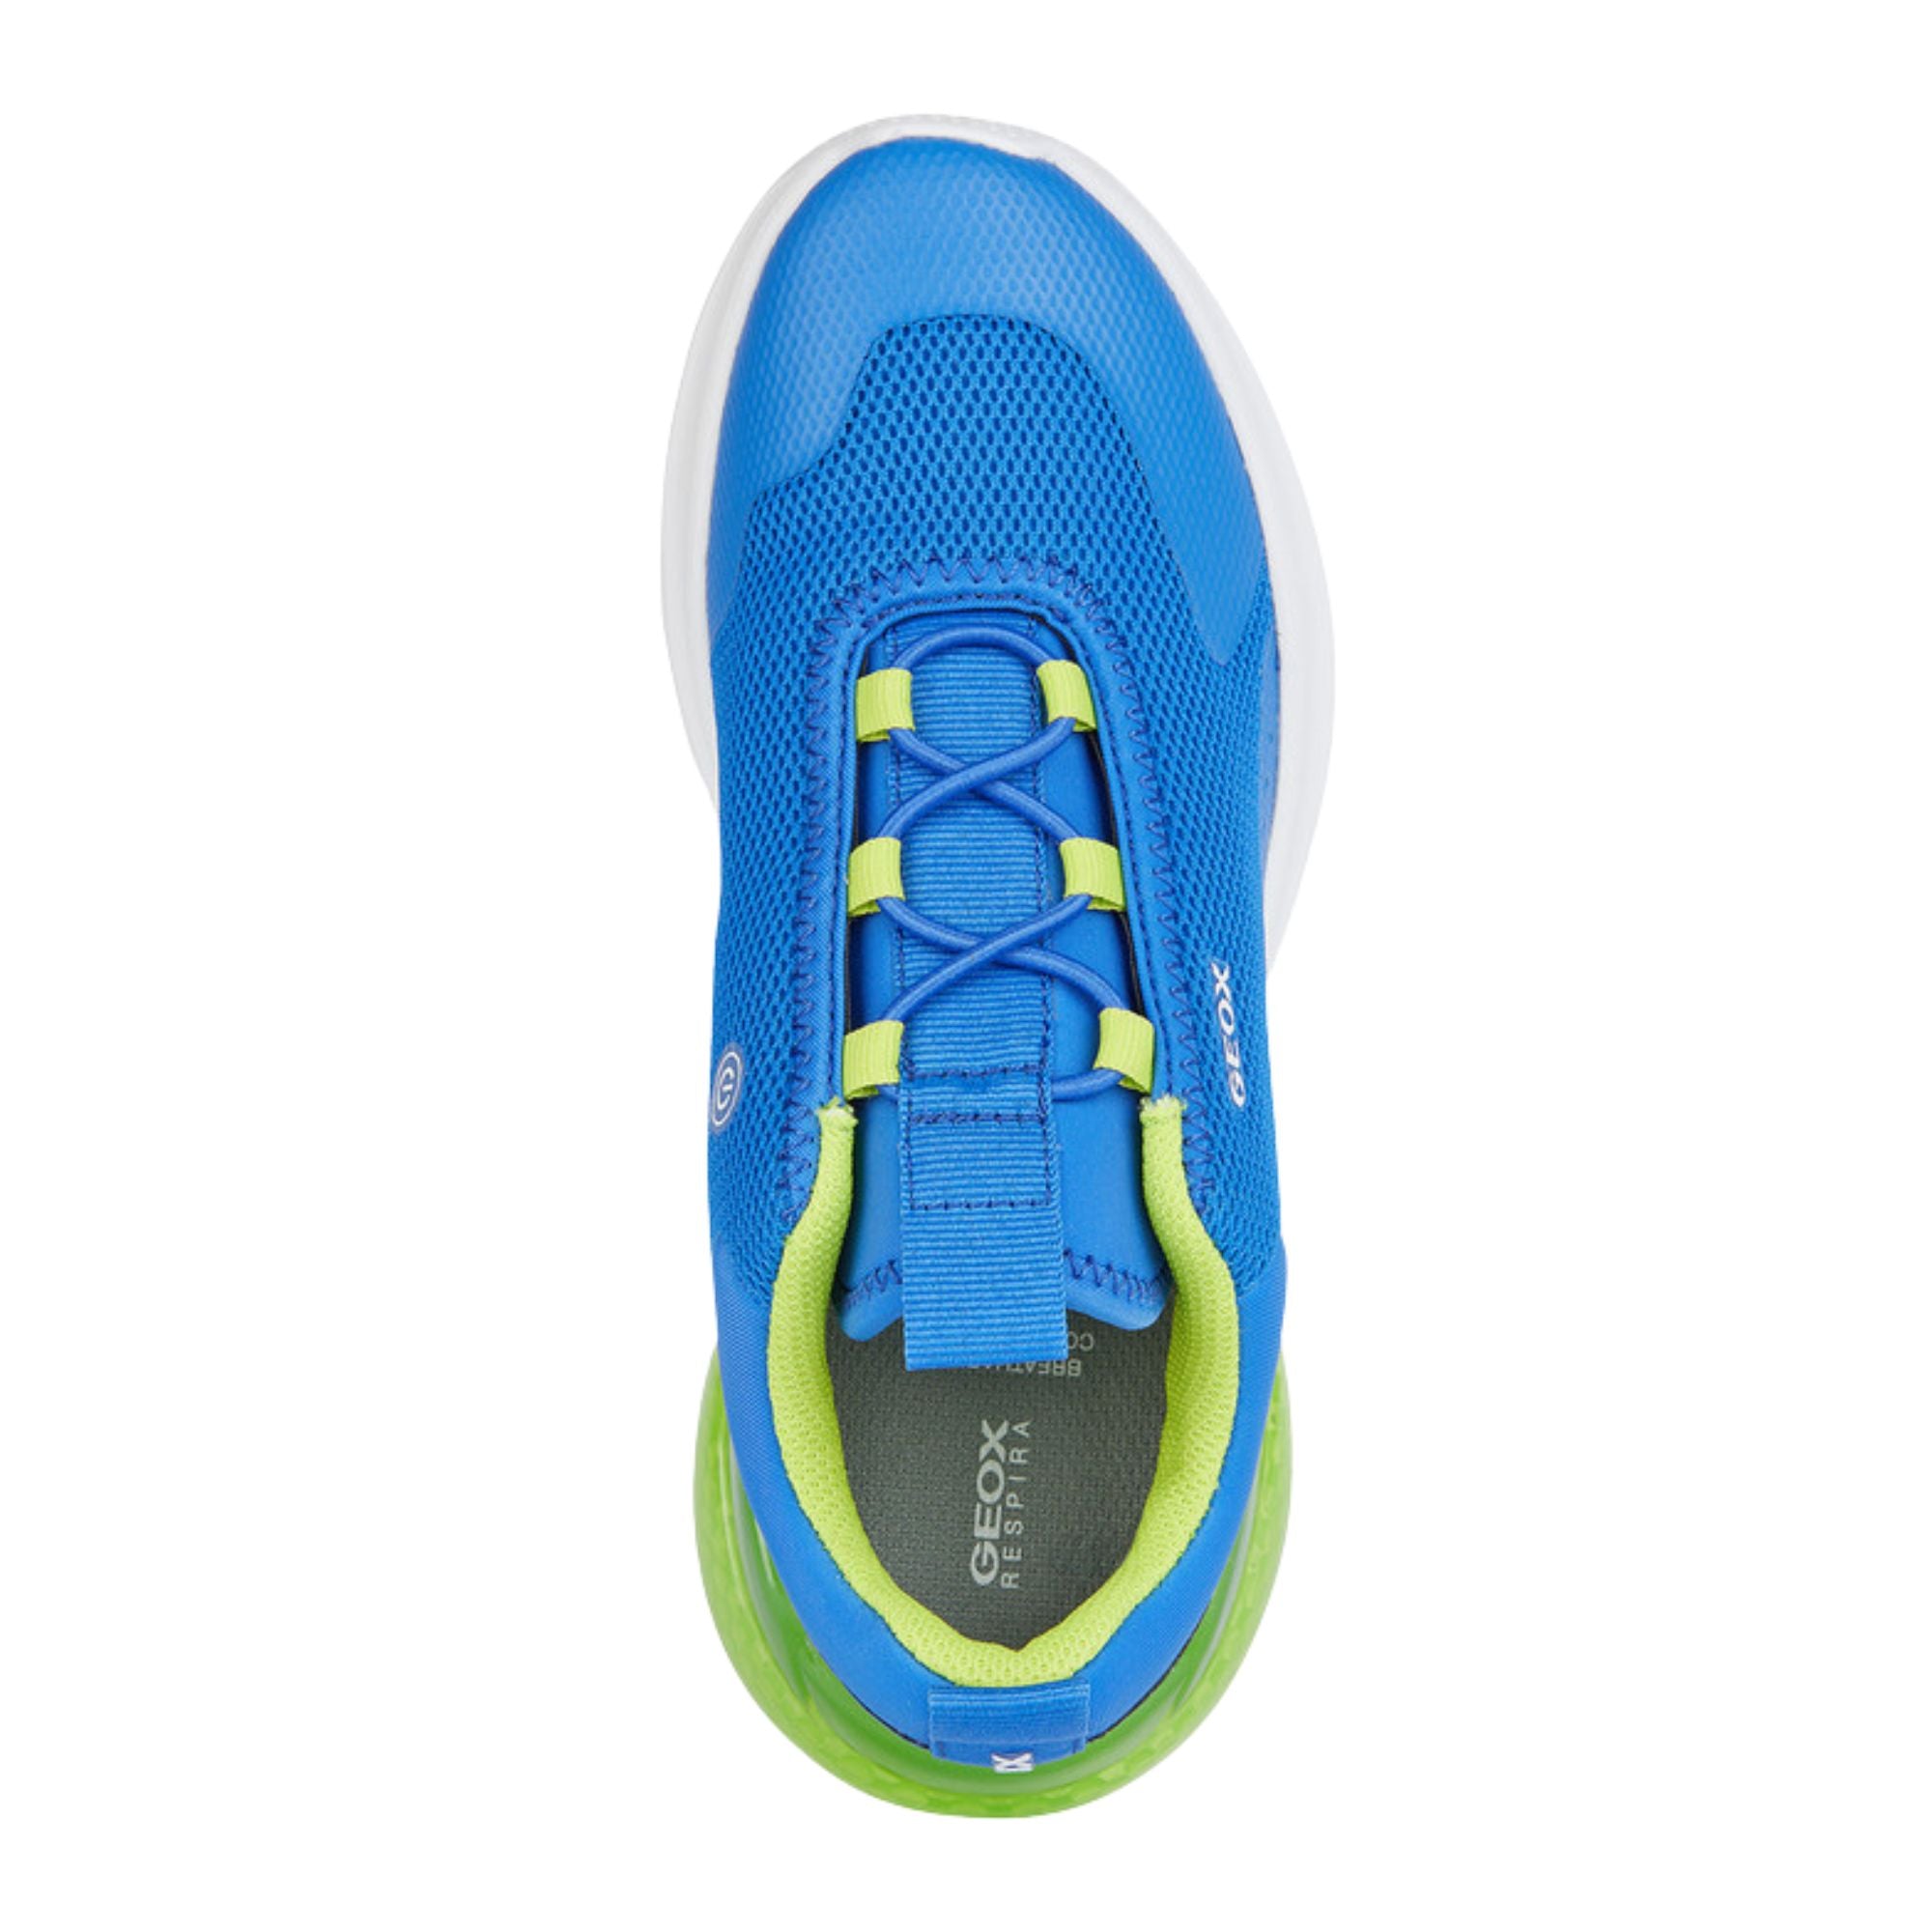 Geox Activart Illuminus Blue Sneakers